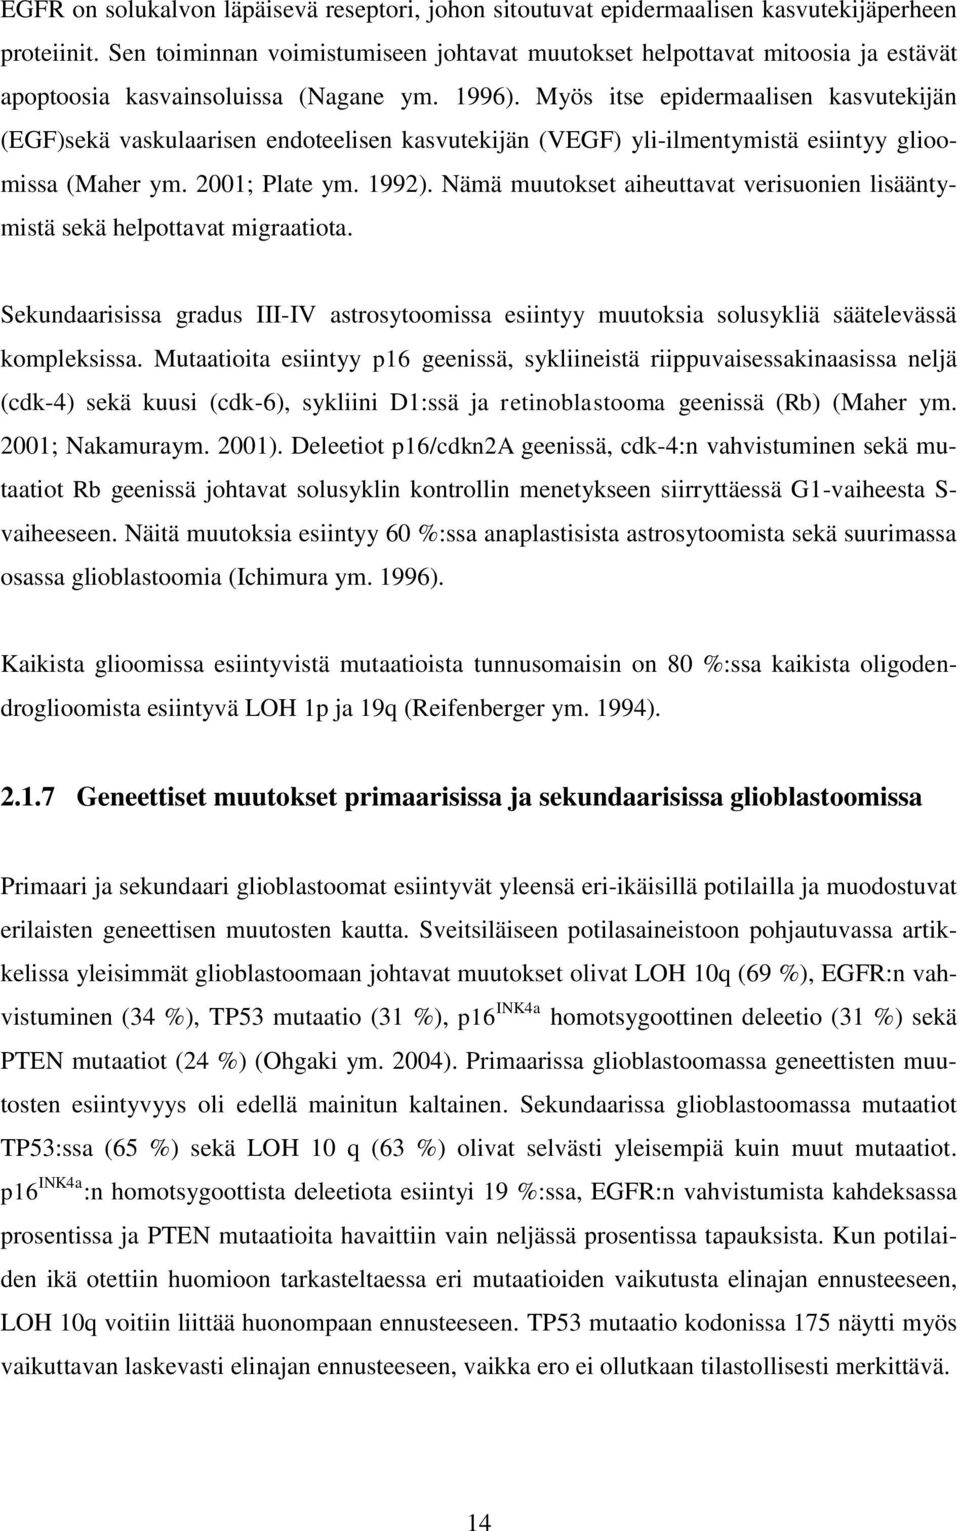 Myös itse epidermaalisen kasvutekijän (EGF)sekä vaskulaarisen endoteelisen kasvutekijän (VEGF) yli-ilmentymistä esiintyy glioomissa (Maher ym. 2001; Plate ym. 1992).